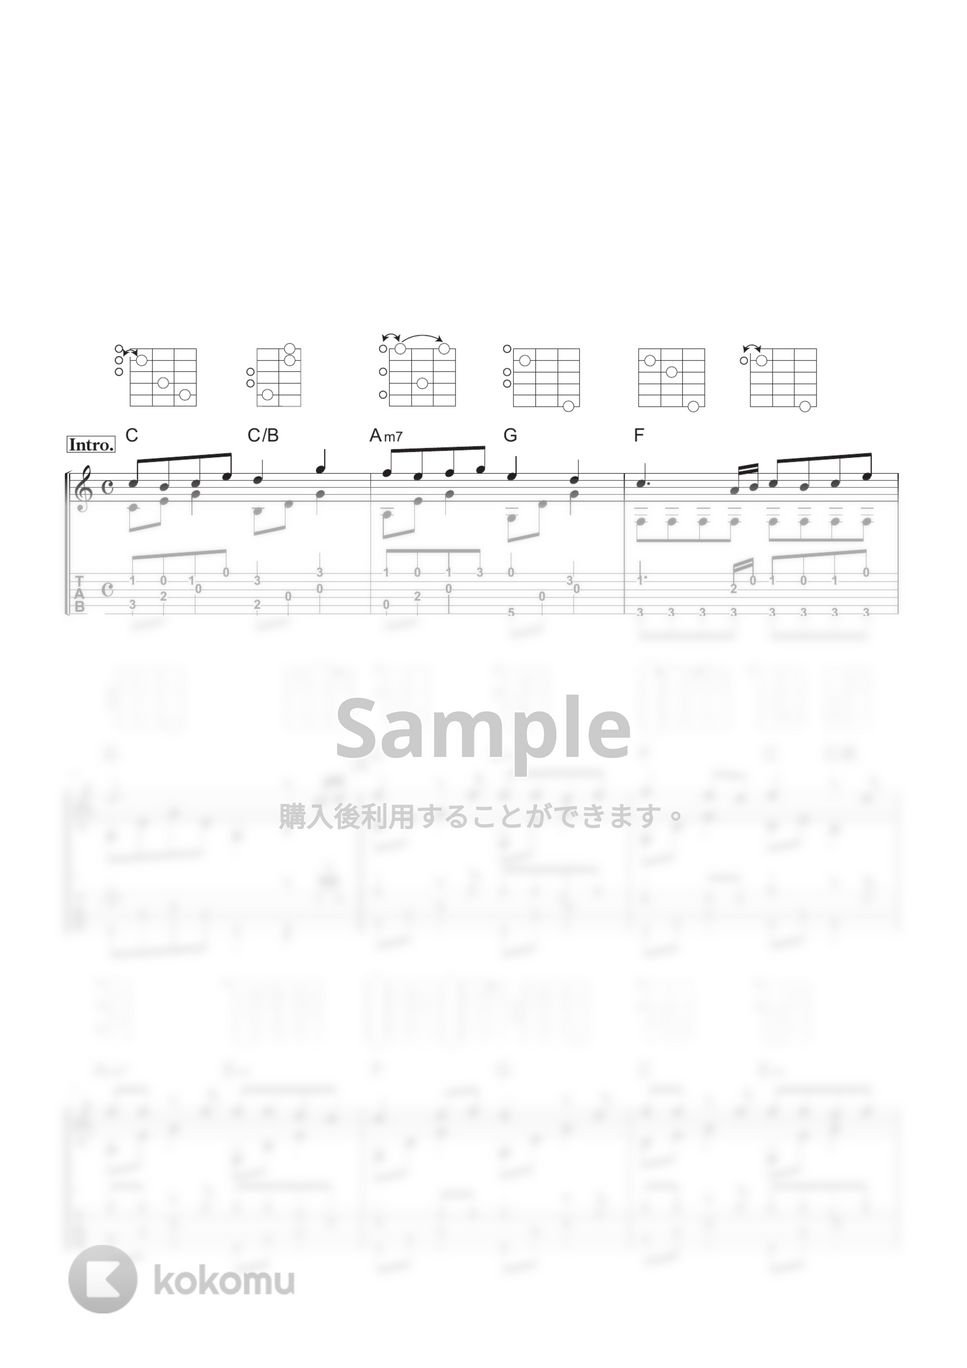 トニカクカワイイ - 月と星空 (ソロギター・ダイアグラム、解説付き) by 川口コウスケ